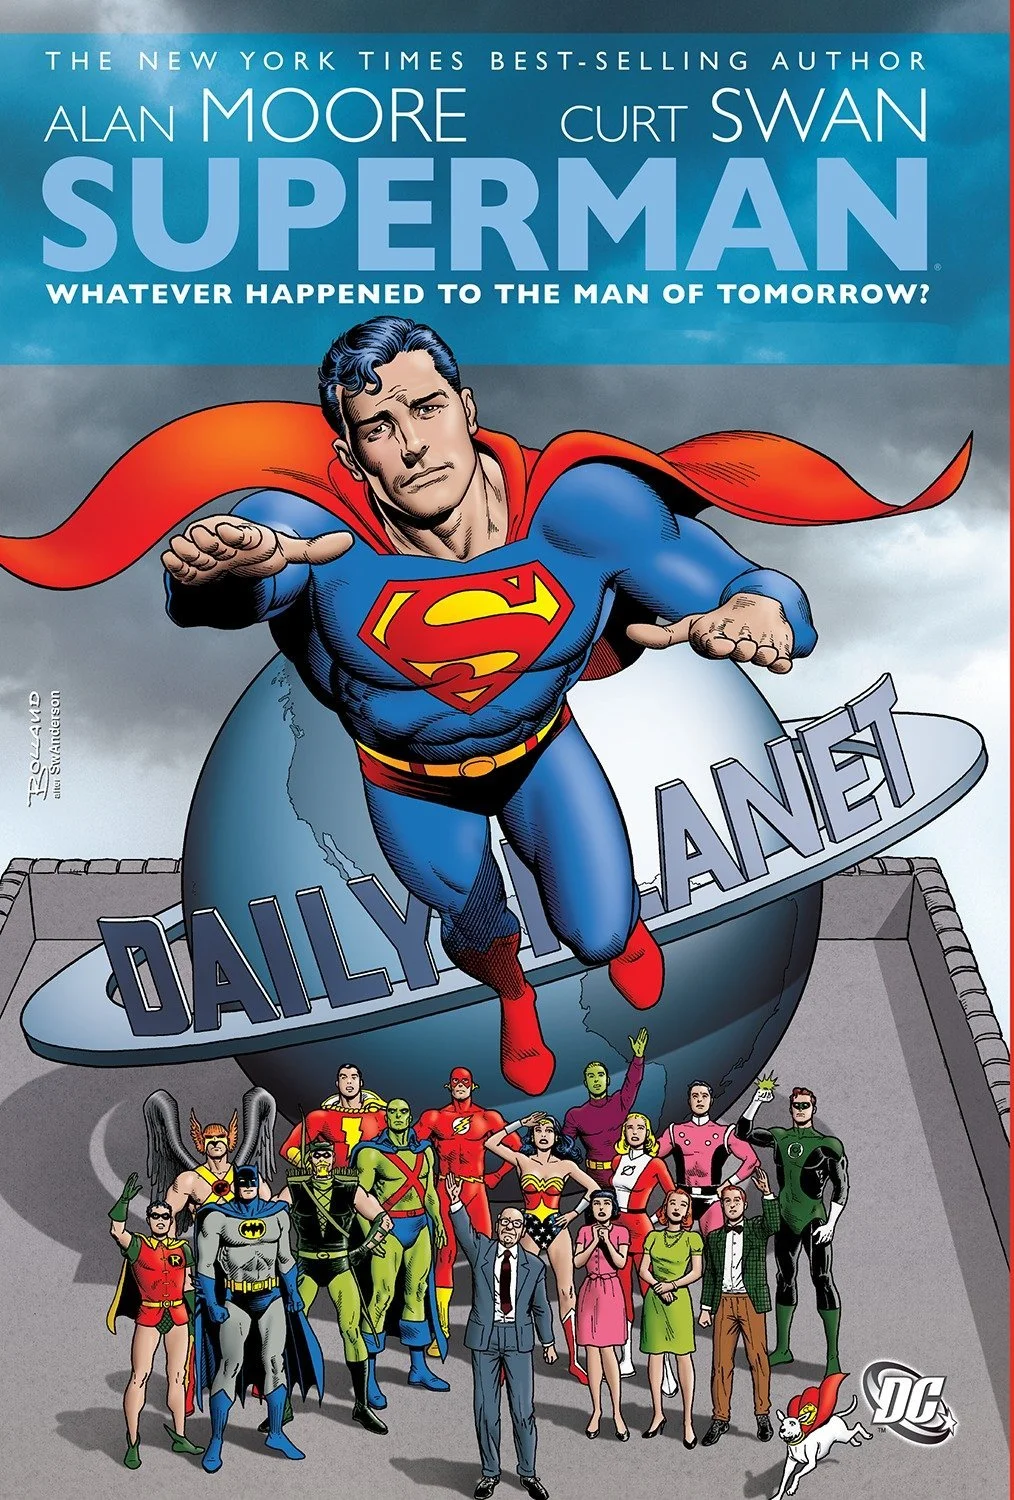 История Супермена и эволюция его образа в комиксах - фото 28